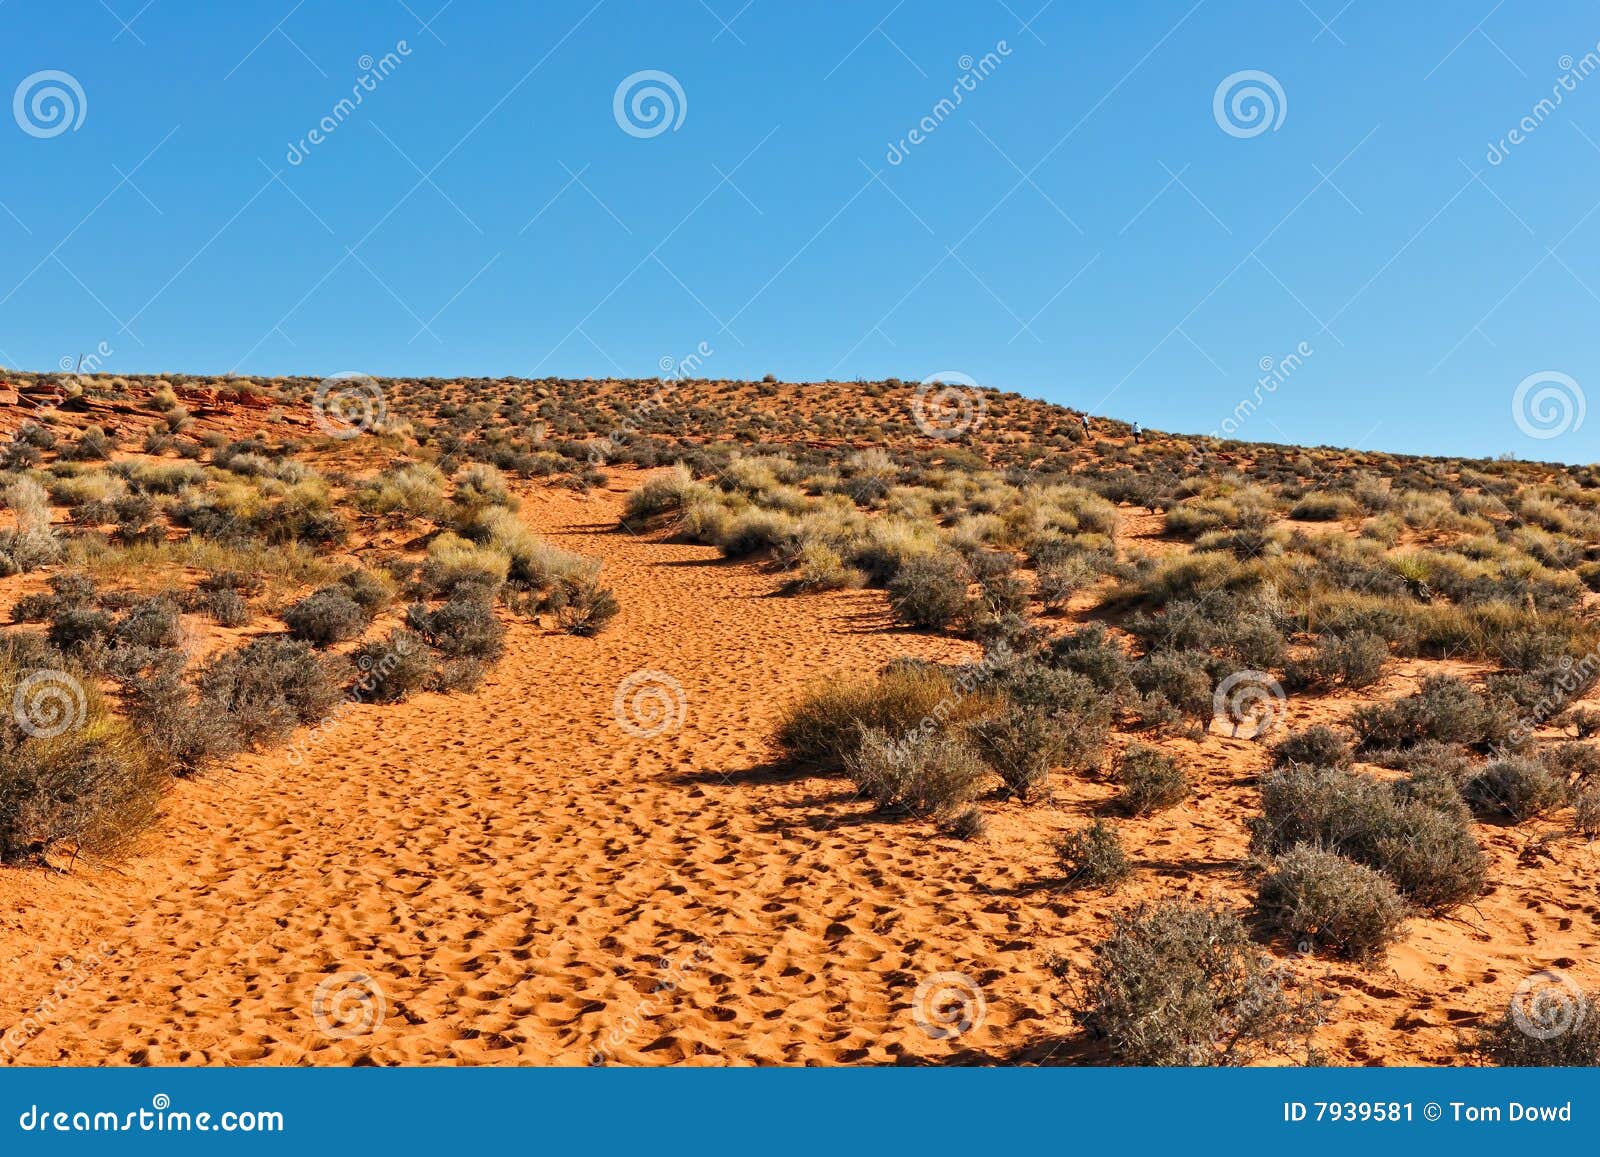 arizona desert scenic